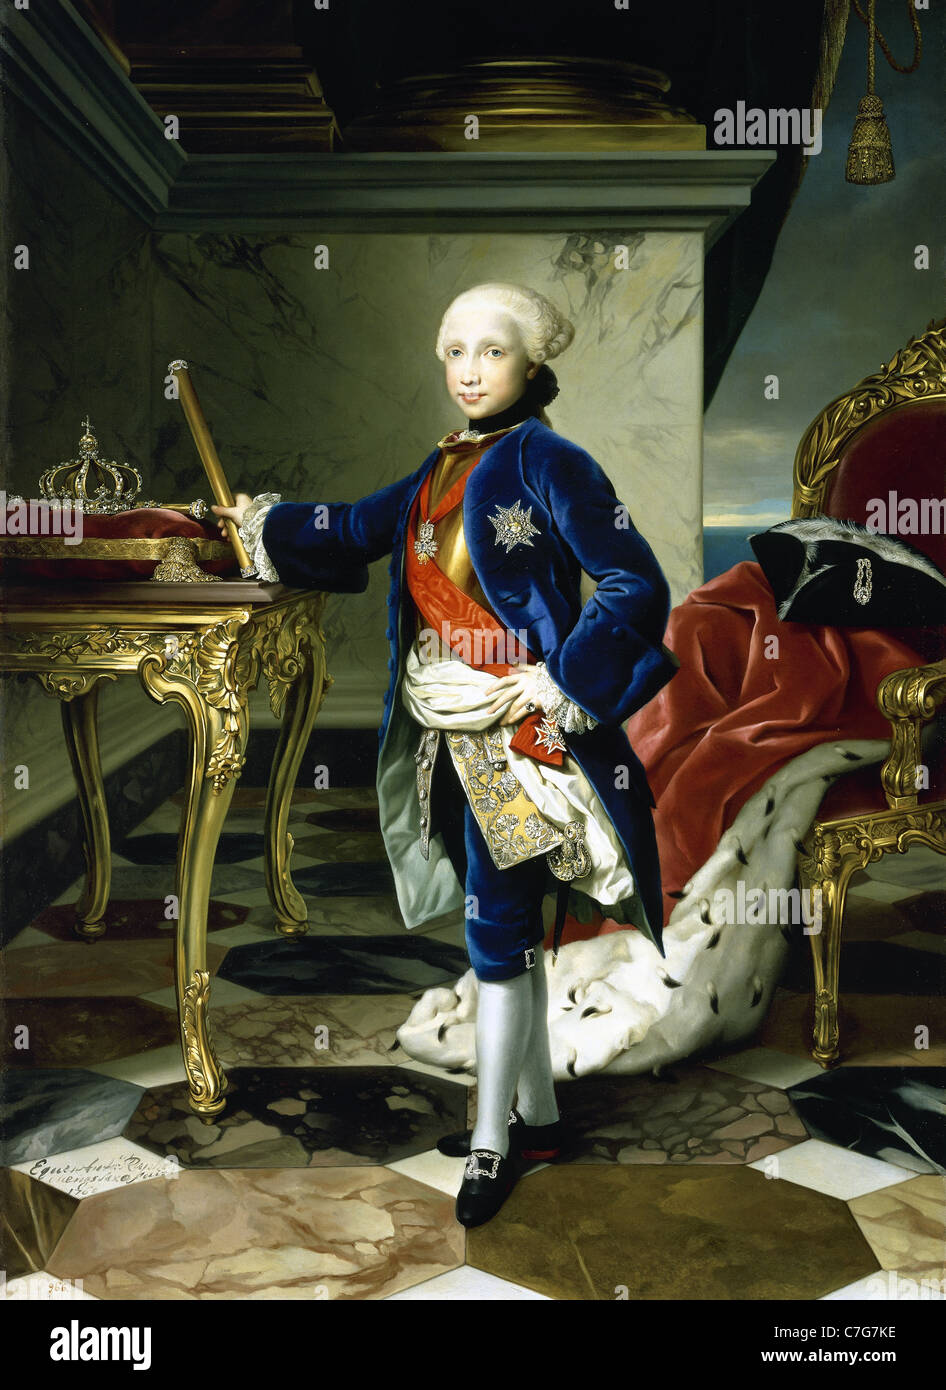 Ferdinand i. von beider Sizilien (1751-1825). König von Sizilien, Neapel und beider Sizilien. Porträt von Anton Raphael Mengs. Stockfoto